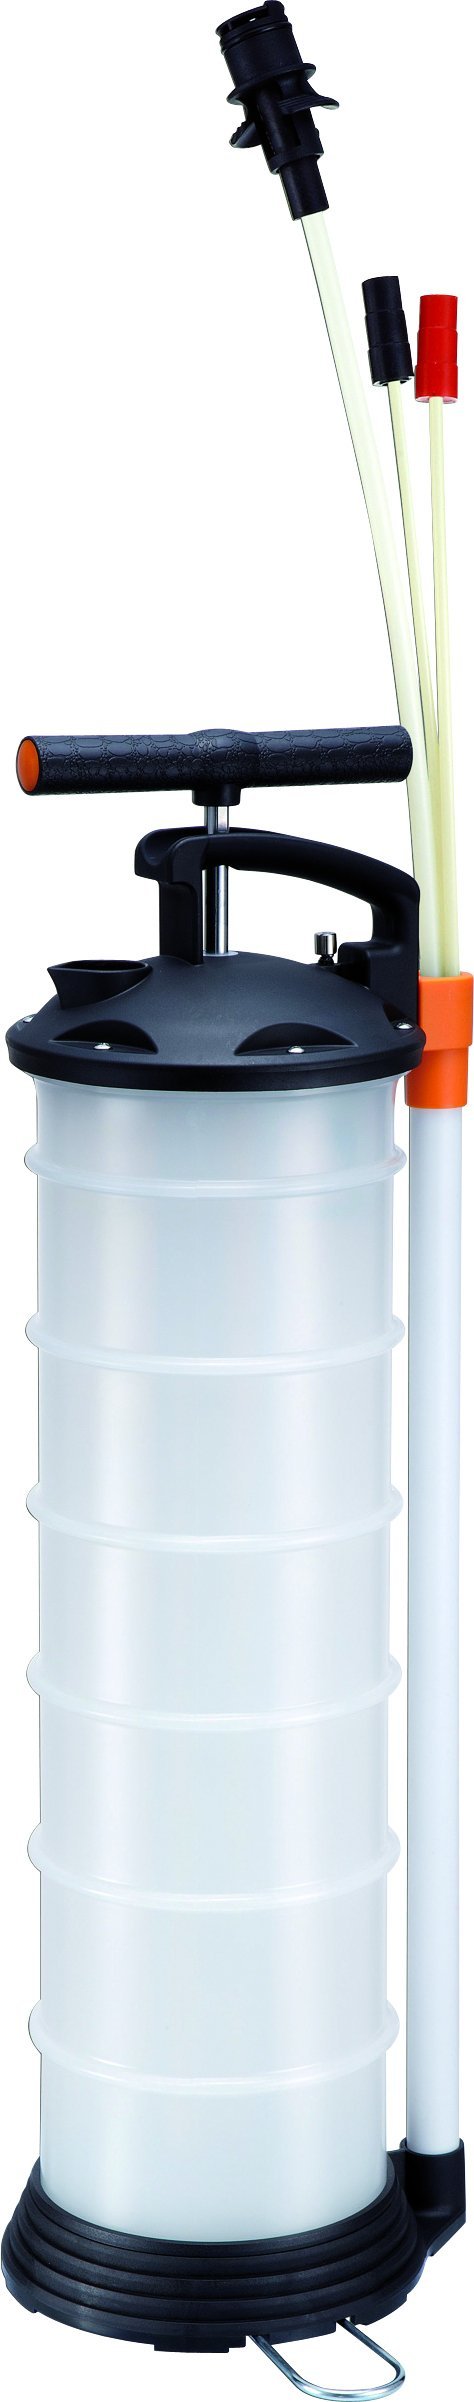 KUNZER 7VP04 Manuelle Vakuumpumpe mit 3 Sonden 6,5 Liter – Für Wasser, Frostschutz, Motor- und Getriebe-Öl von Kunzer